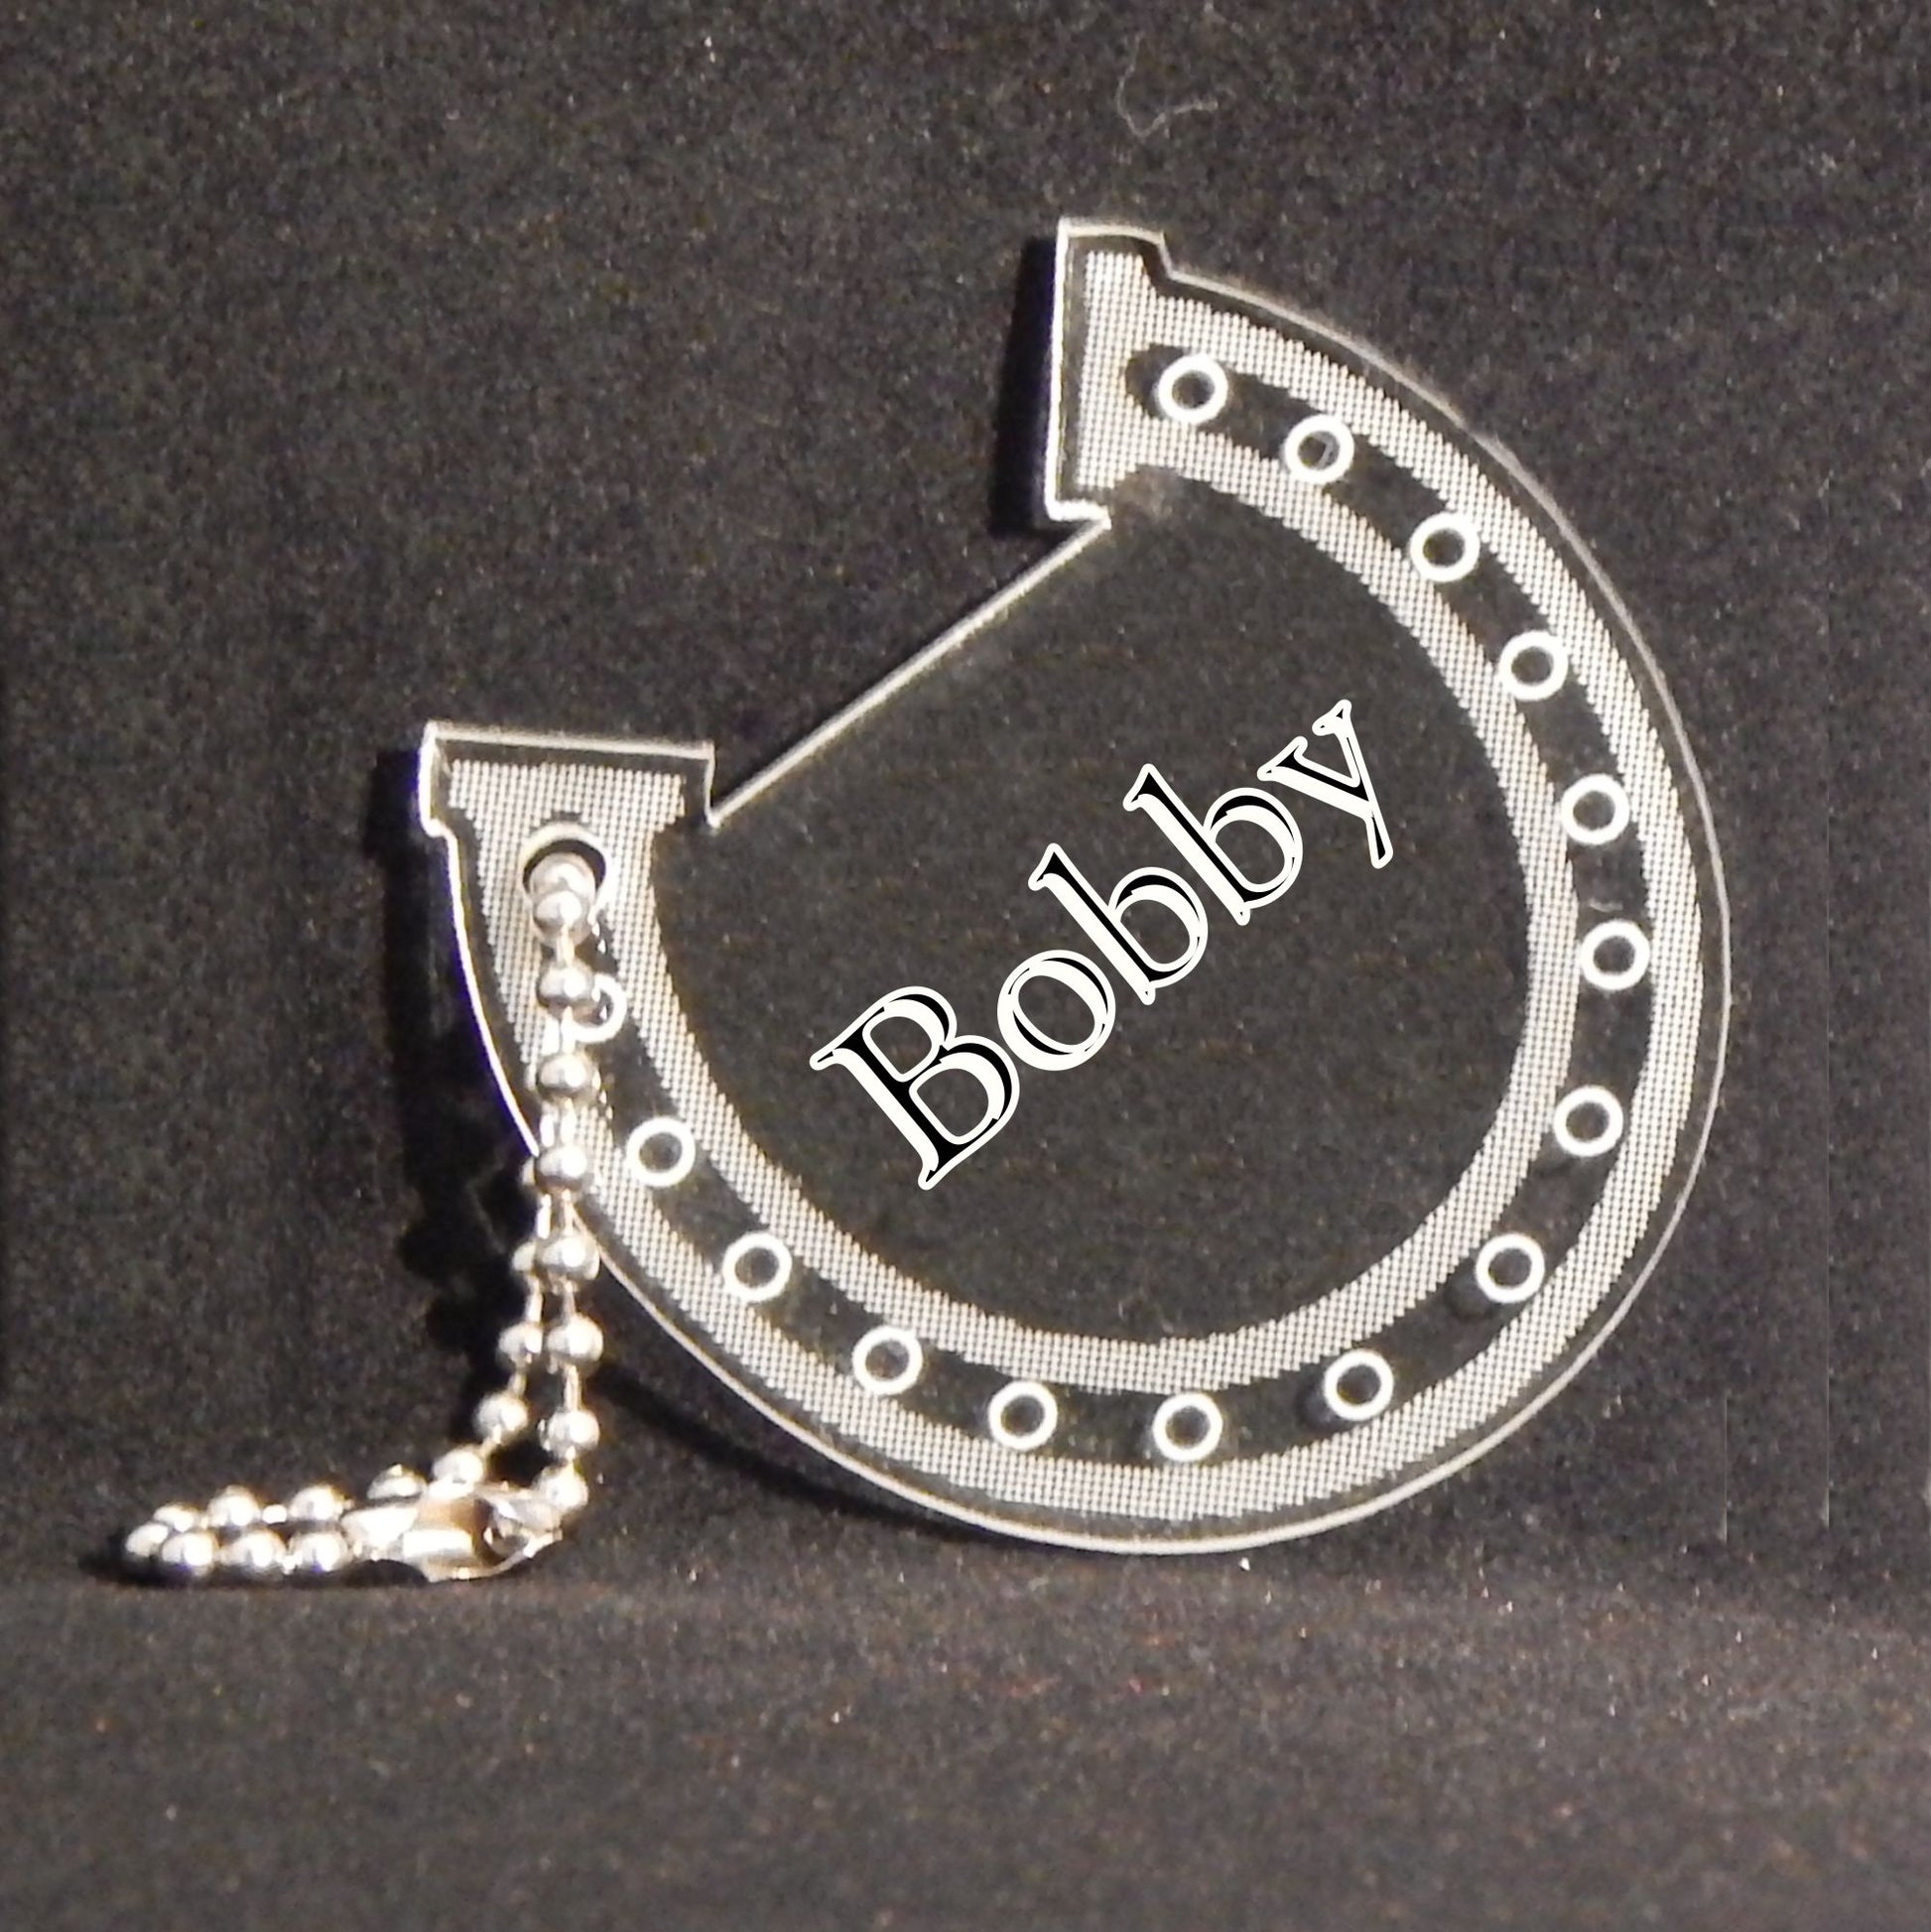 horseshoe shaped acrylic keychain designed with a horseshoe design and engraved with name